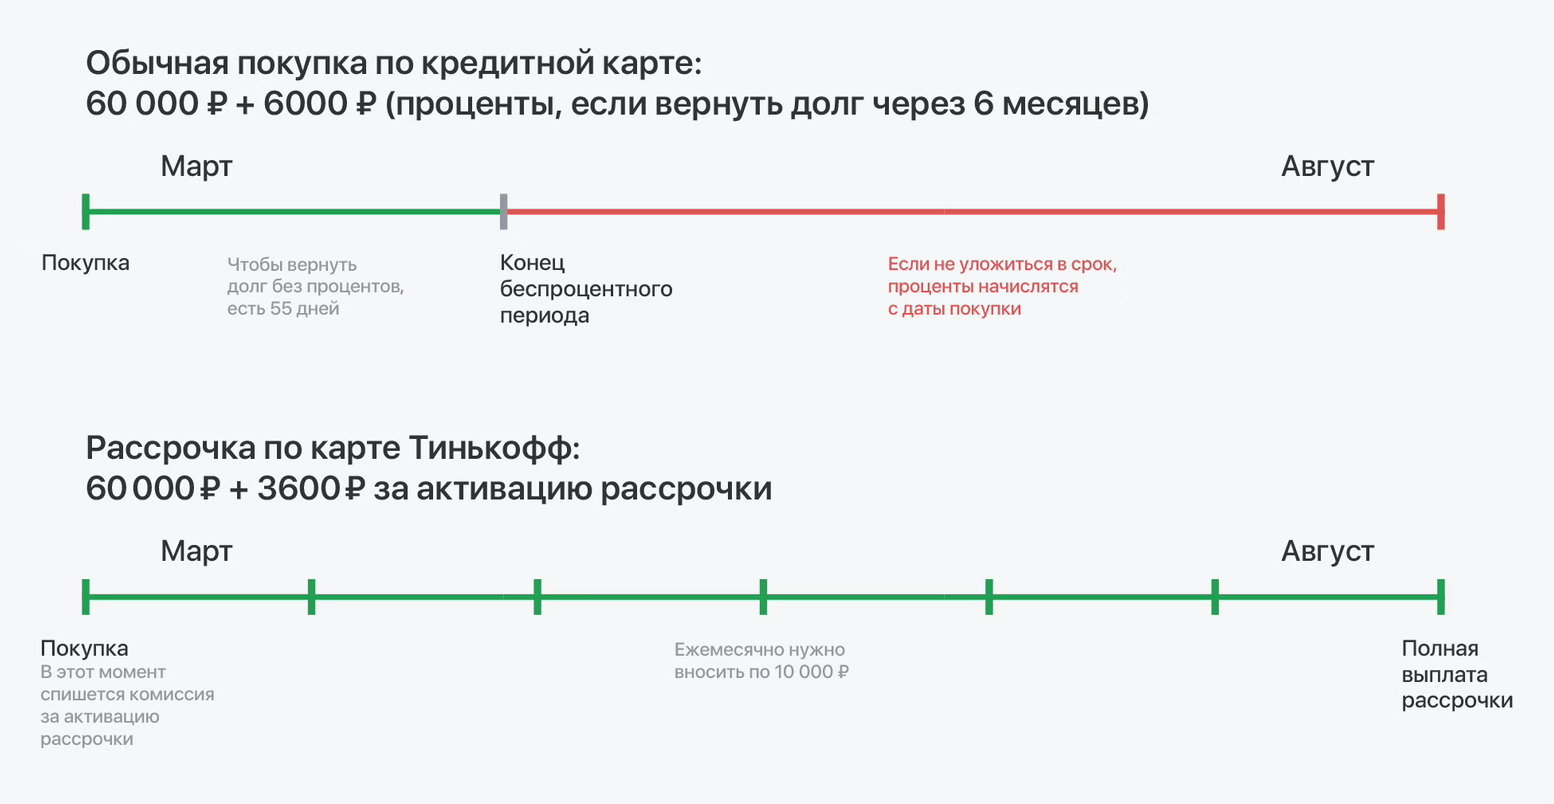 Рассрочкой по карте бессмысленно пользоваться, если вы собираетесь вернуть долг за пару месяцев. Но на отрезке в полгода она выгоднее, чем обслуживание долга по кредитке. Источник: tinkoff.ru